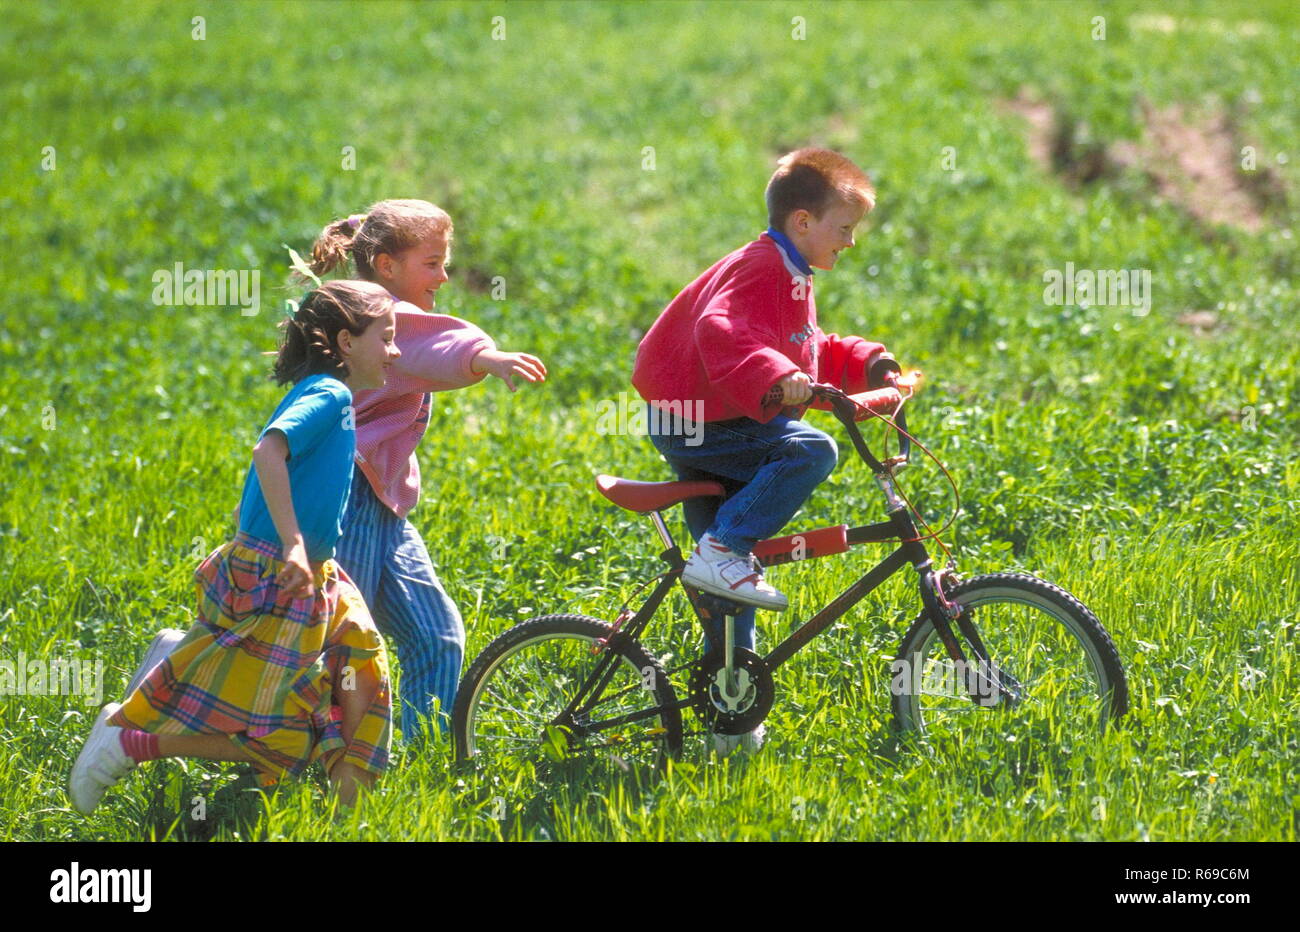 Parkszene, Gruppe von 3 Kindern im Alter von 6-10 Jahren, 2 Maedchen folgen zu Fuss einem Jungen auf dem Fahrrad durch eine Wiese Stock Photo